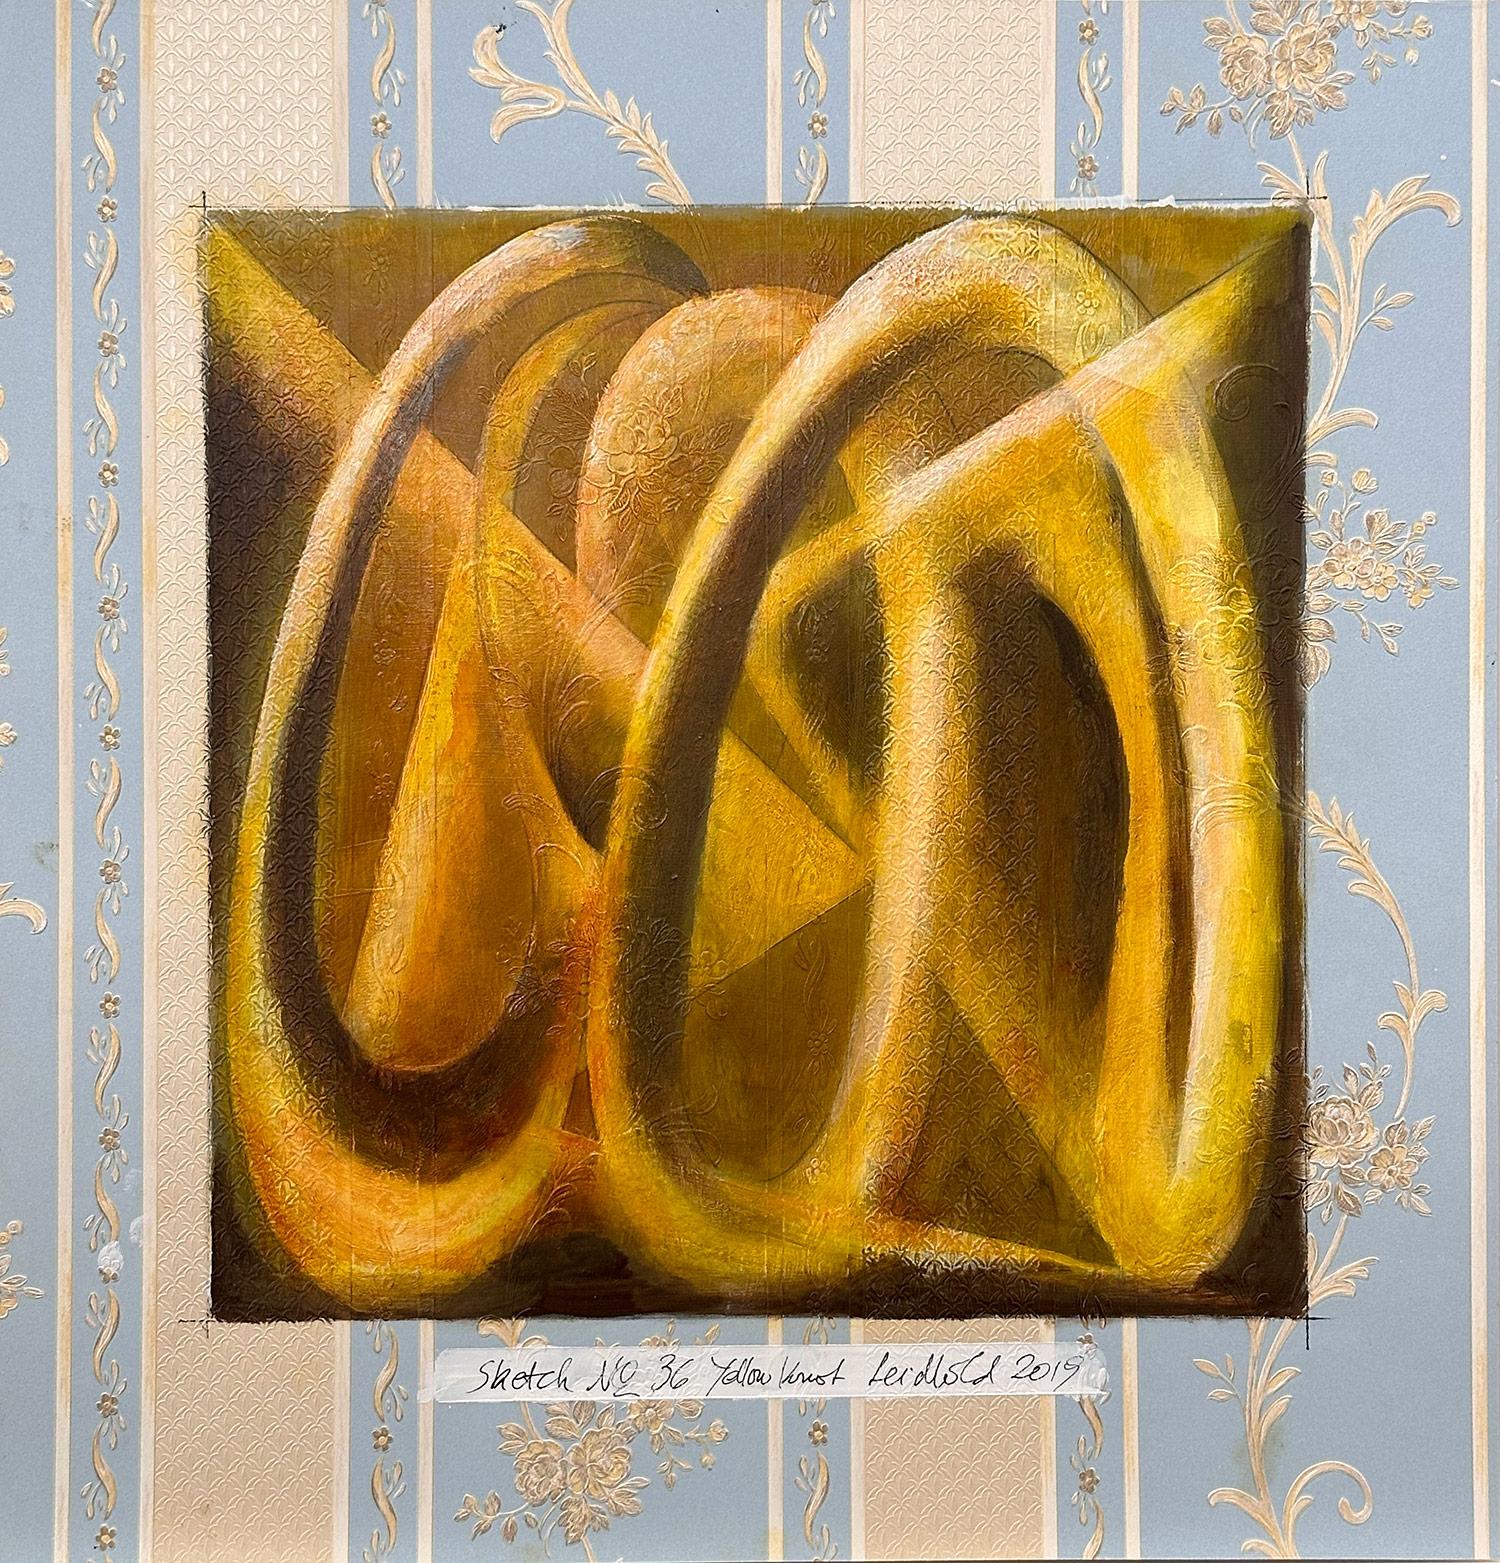 "Sketch n°36 Yellow Knot, peinture figurative abstraite sur papier peint